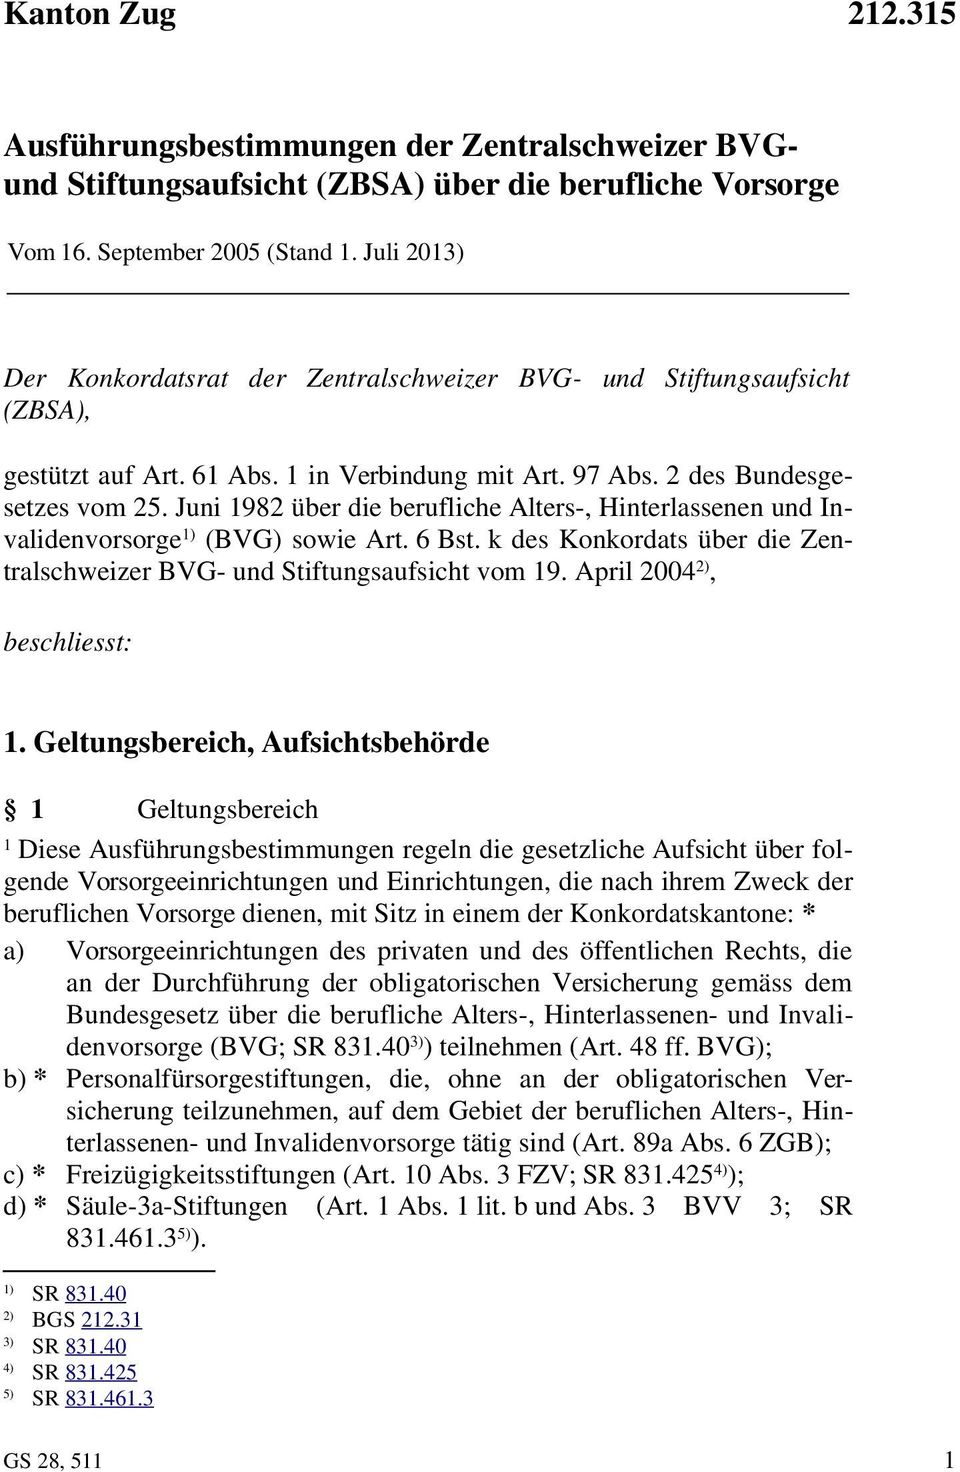 Juni 98 über die berufliche Alters-, Hinterlassenen und Invalidenvorsorge ) (BVG) sowie Art. 6 Bst. k des Konkordats über die Zentralschweizer BVG- und Stiftungsaufsicht vom 9.